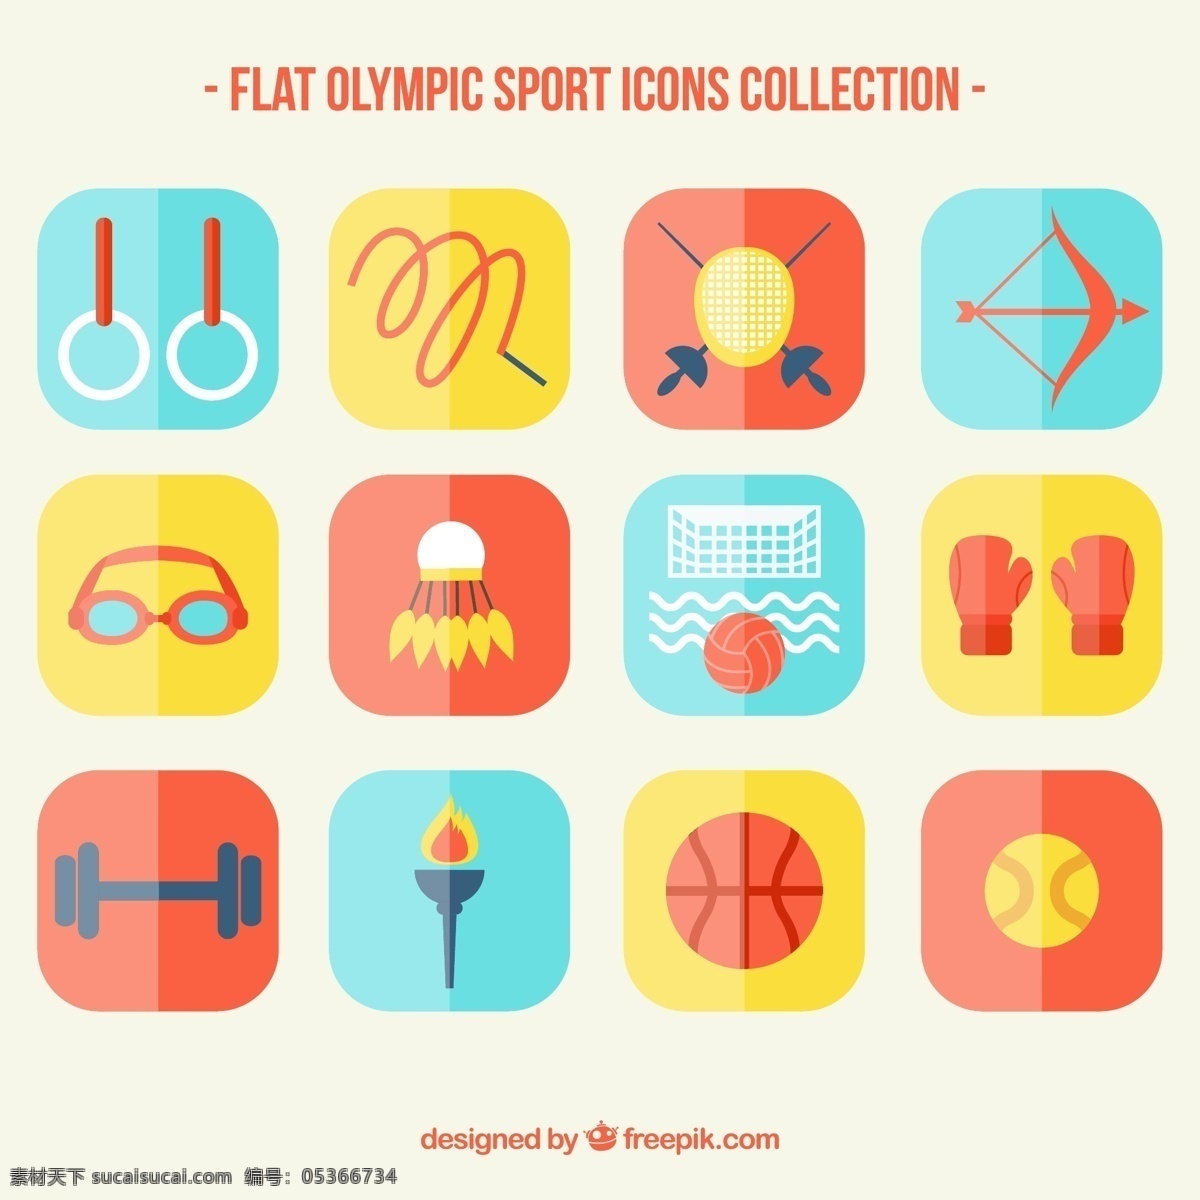 平面设计 中 奥运 体育 收藏 运动 健身 健康 平板 活动 网球 训练 游泳 拳击 体操 比赛 火炬 生活方式 美国